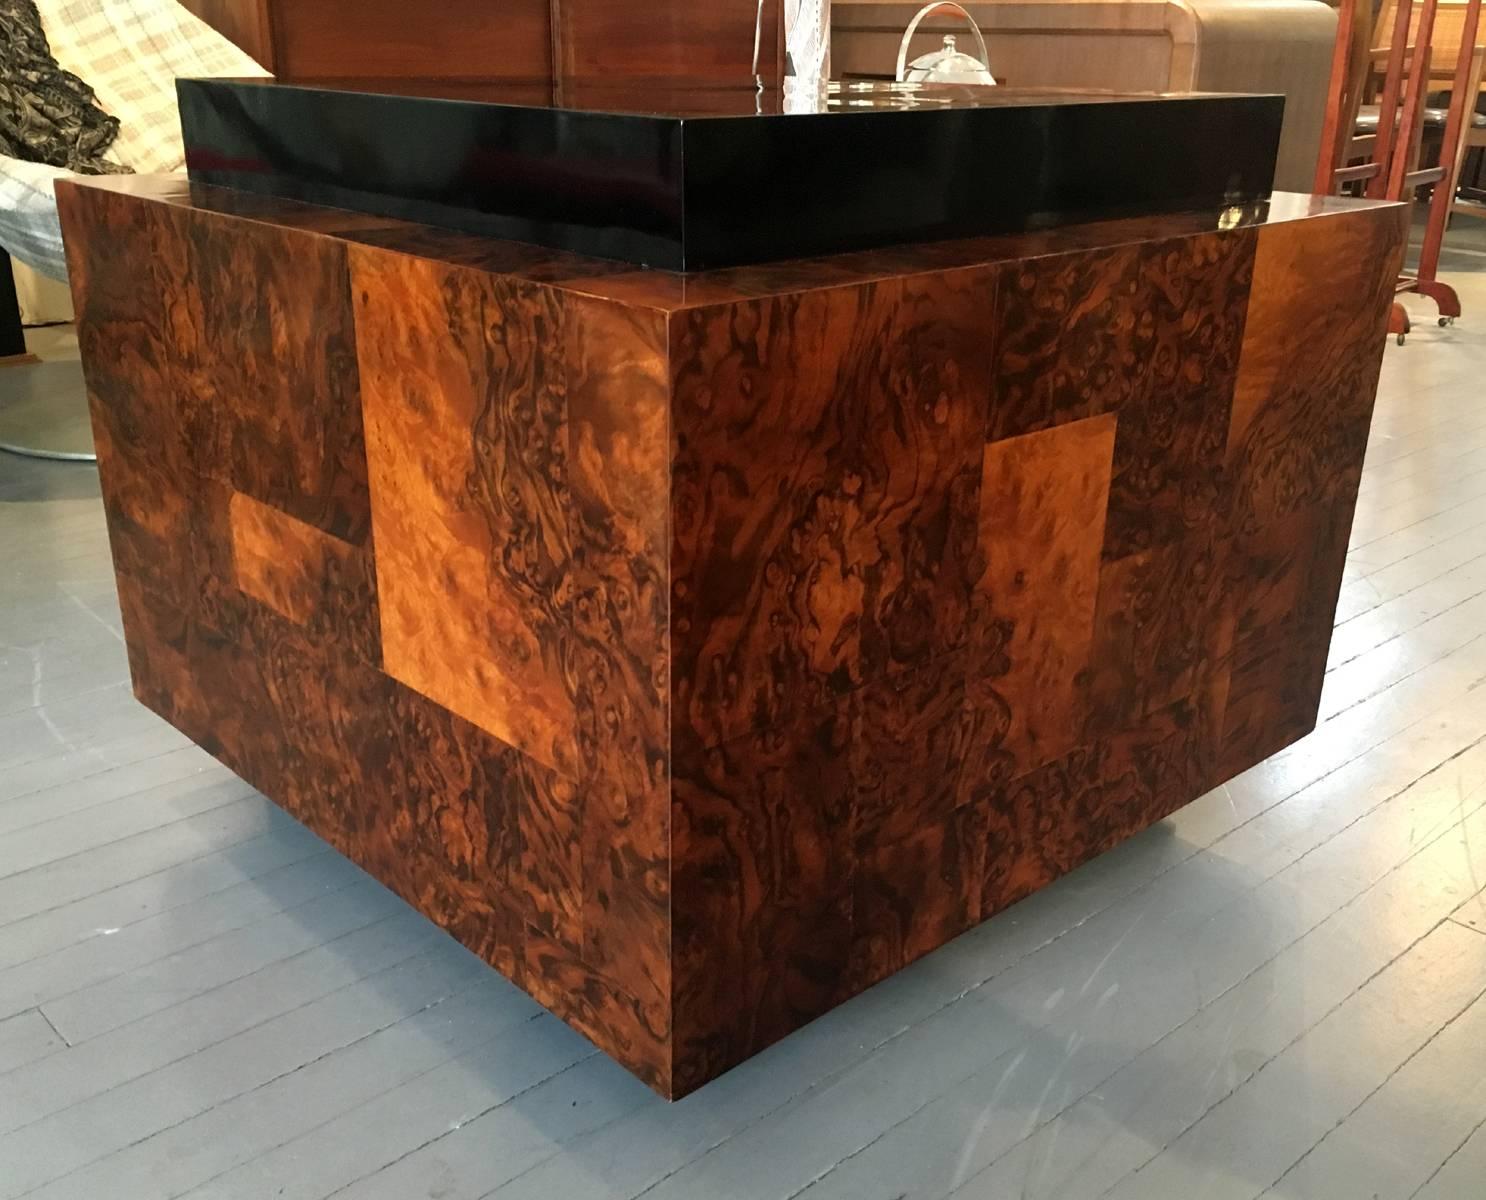 Fantastique table d'appoint en forme de cube, réalisée par Paul Evans pour Directional, vers les années 1970. Fait d'un patchwork de bois de ronce avec des grains spectaculaires, en contraste avec le dessus et la base laqués noir brillant. Étiqueté